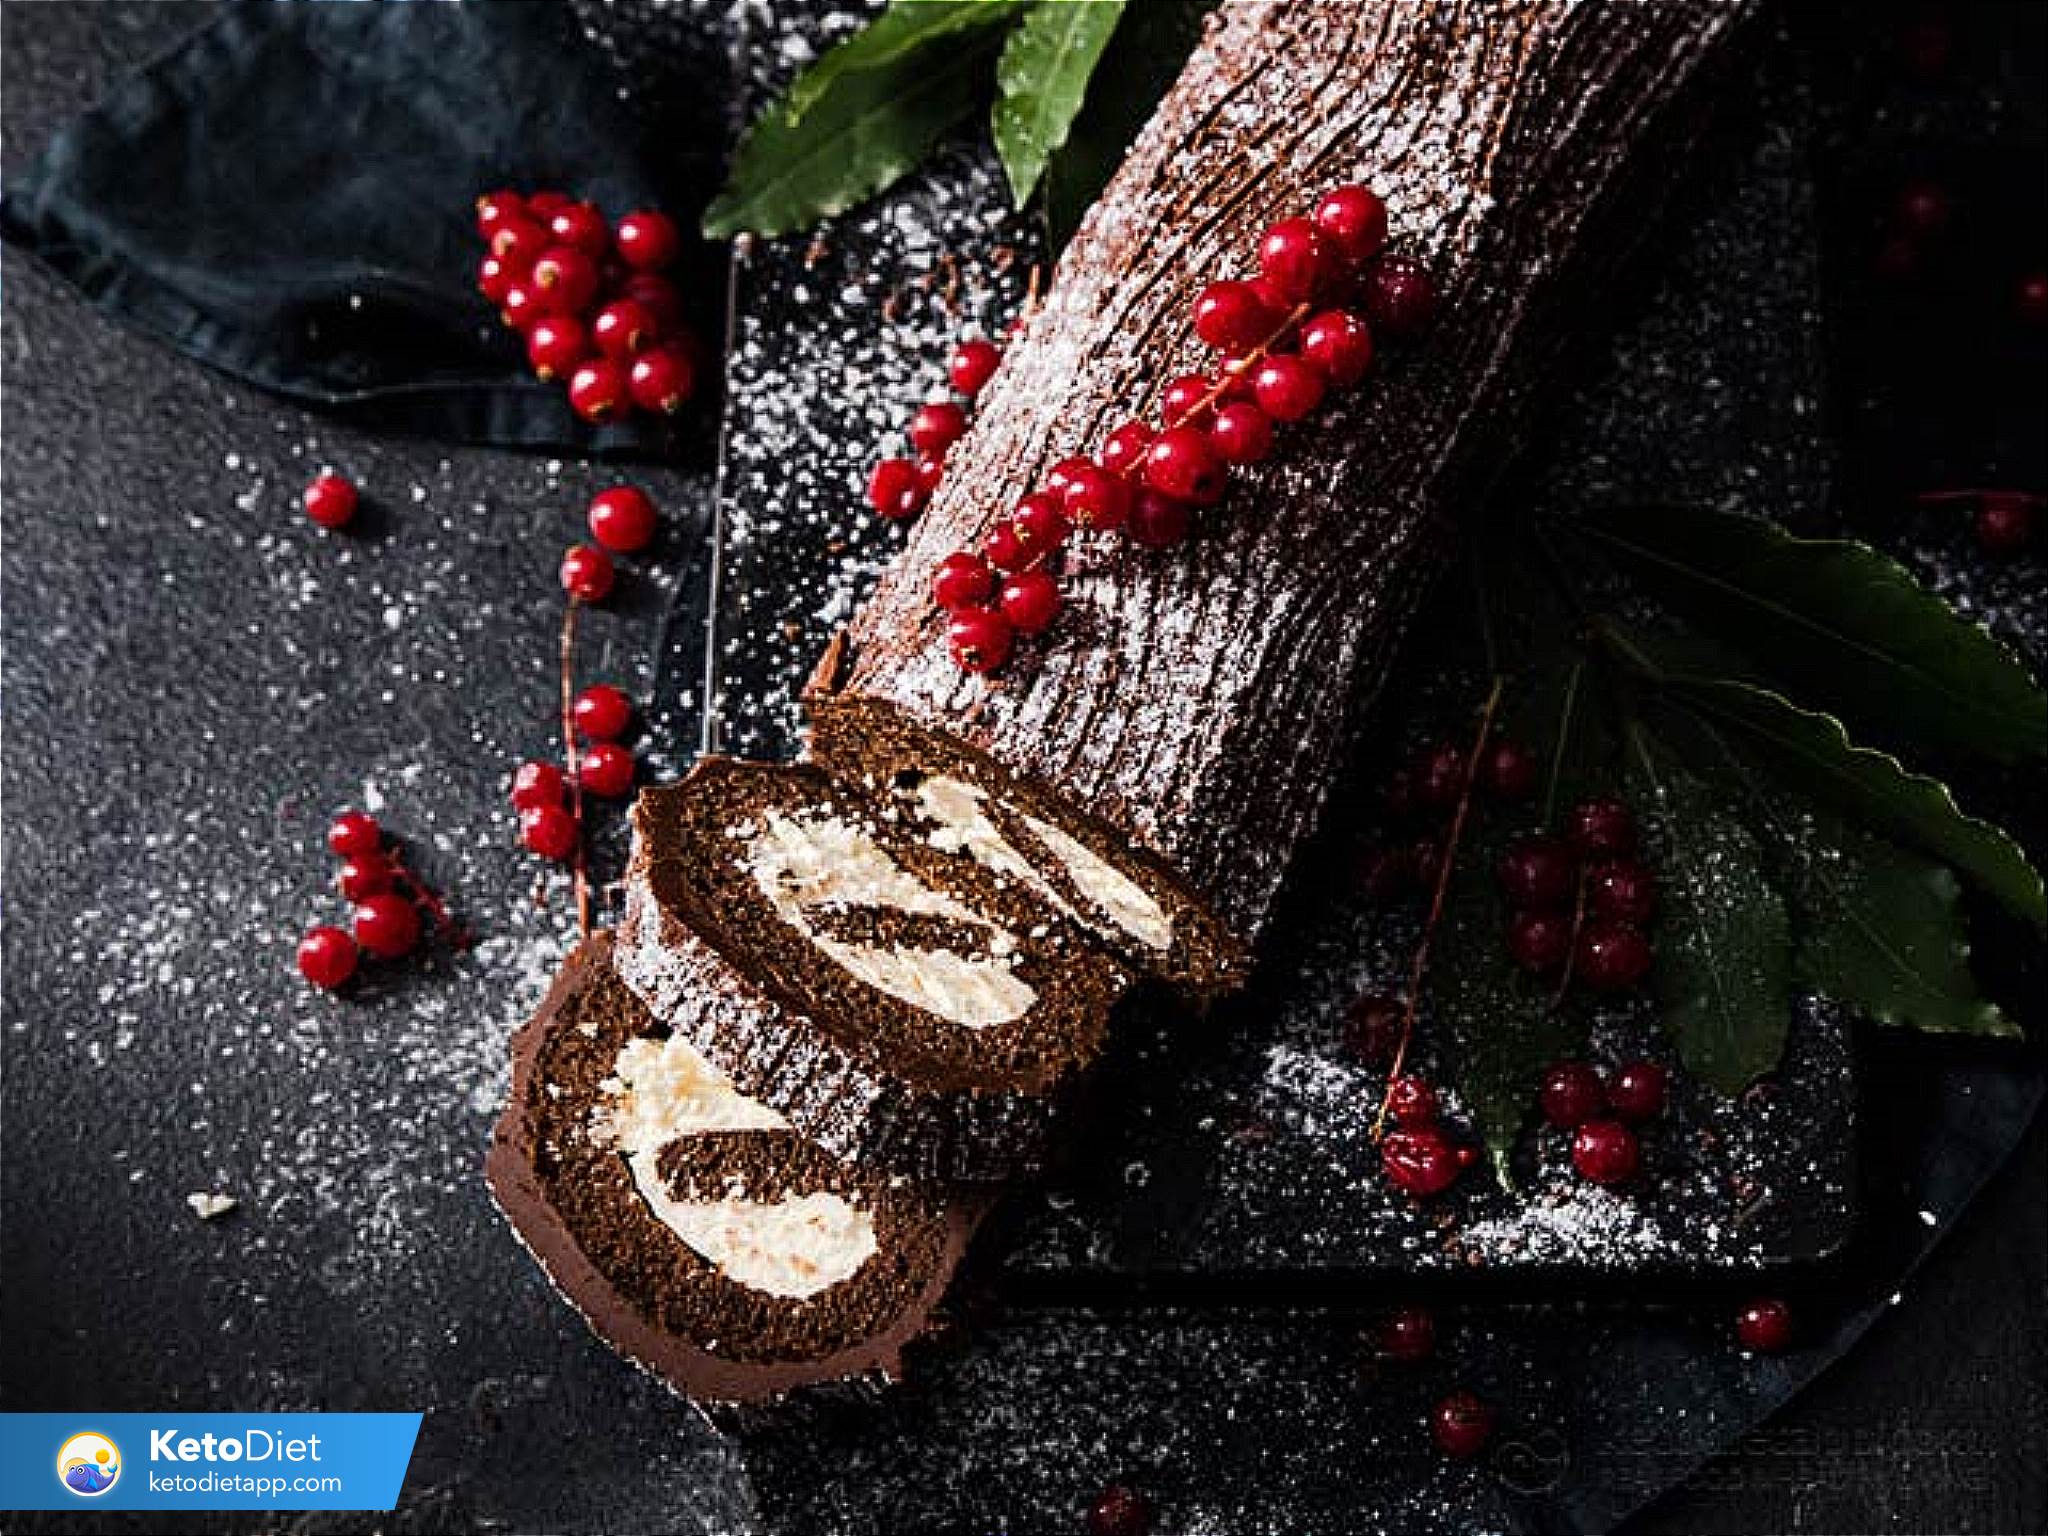 Bánh rượu Chocolate Noel - Mùa Giáng sinh không thể thiếu những chiếc bánh tráng miệng thơm ngon. Với bánh rượu Chocolate Noel, bạn sẽ hòa mình vào không khí của mùa lễ hội, cảm nhận được hương vị đặc trưng của bánh mà không thể nào quên. Cùng gia đình và bạn bè thưởng thức những chiếc bánh tuyệt vời này nhé!